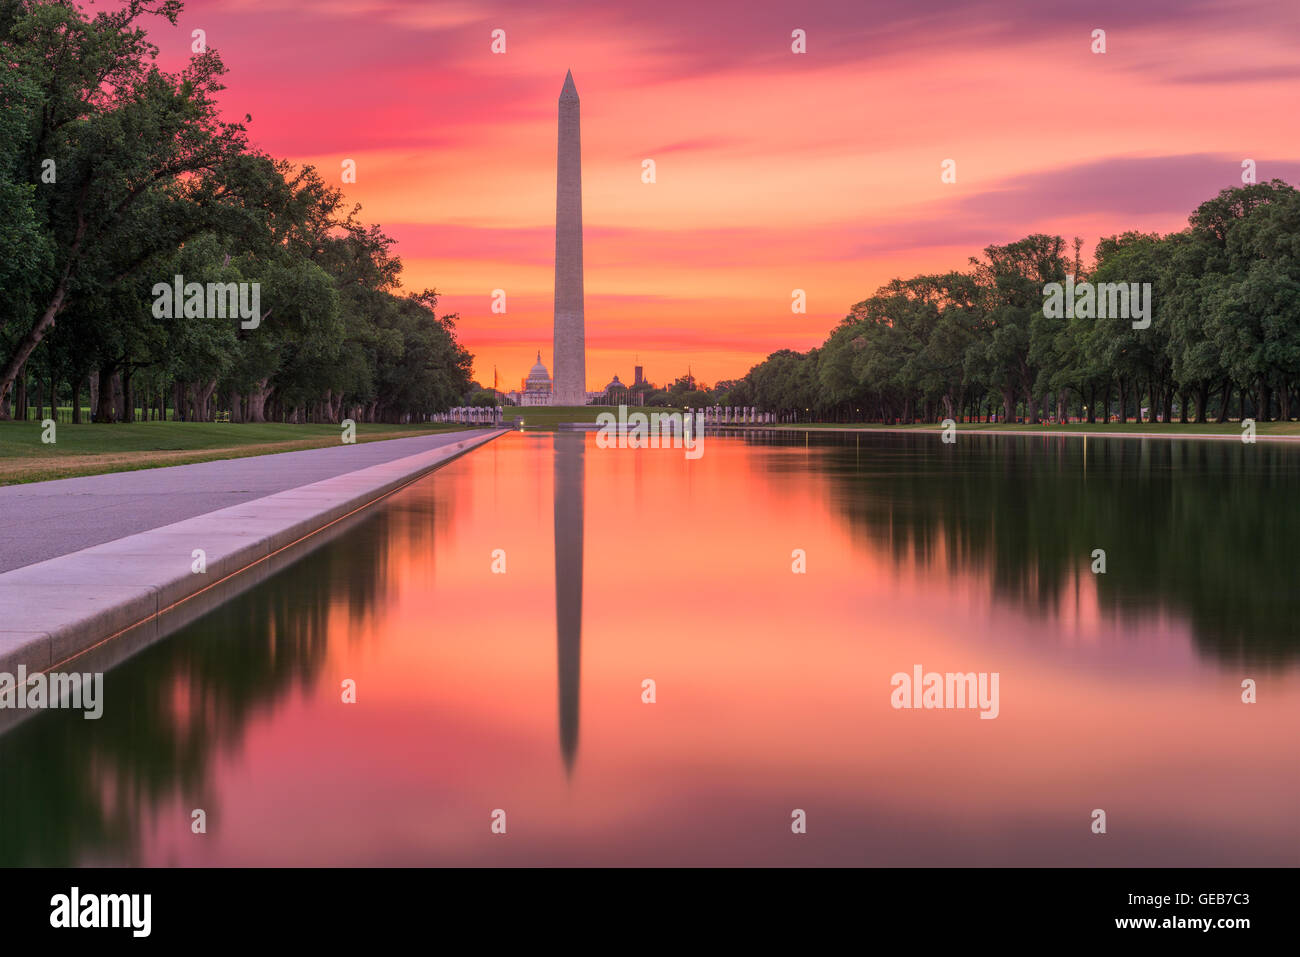 Washington Monument on the Reflecting Pool in Washington, DC. Stock Photo